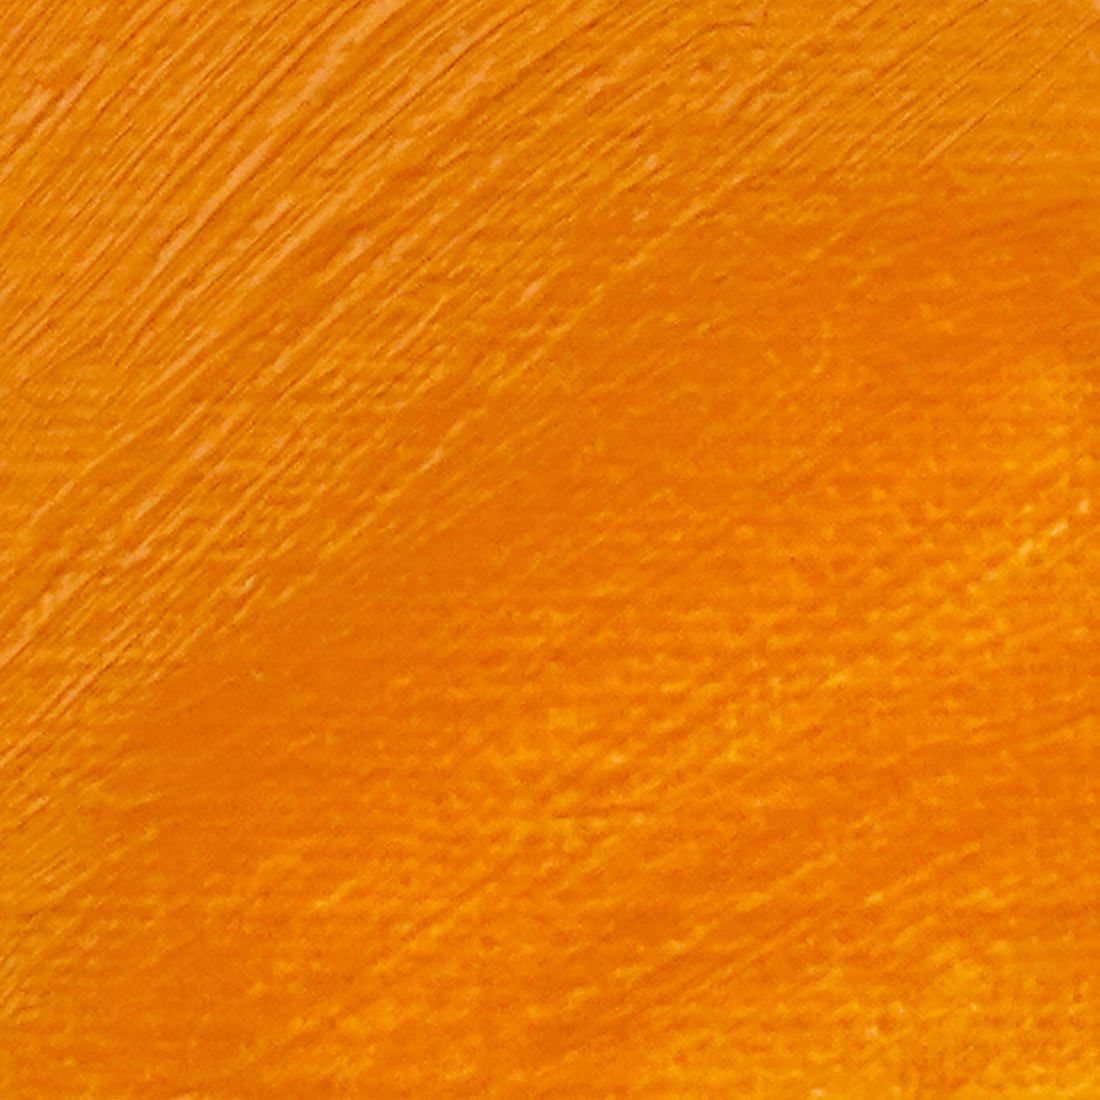 Langridge Oil Colour 300ml Titanium Orange - theartshop.com.au